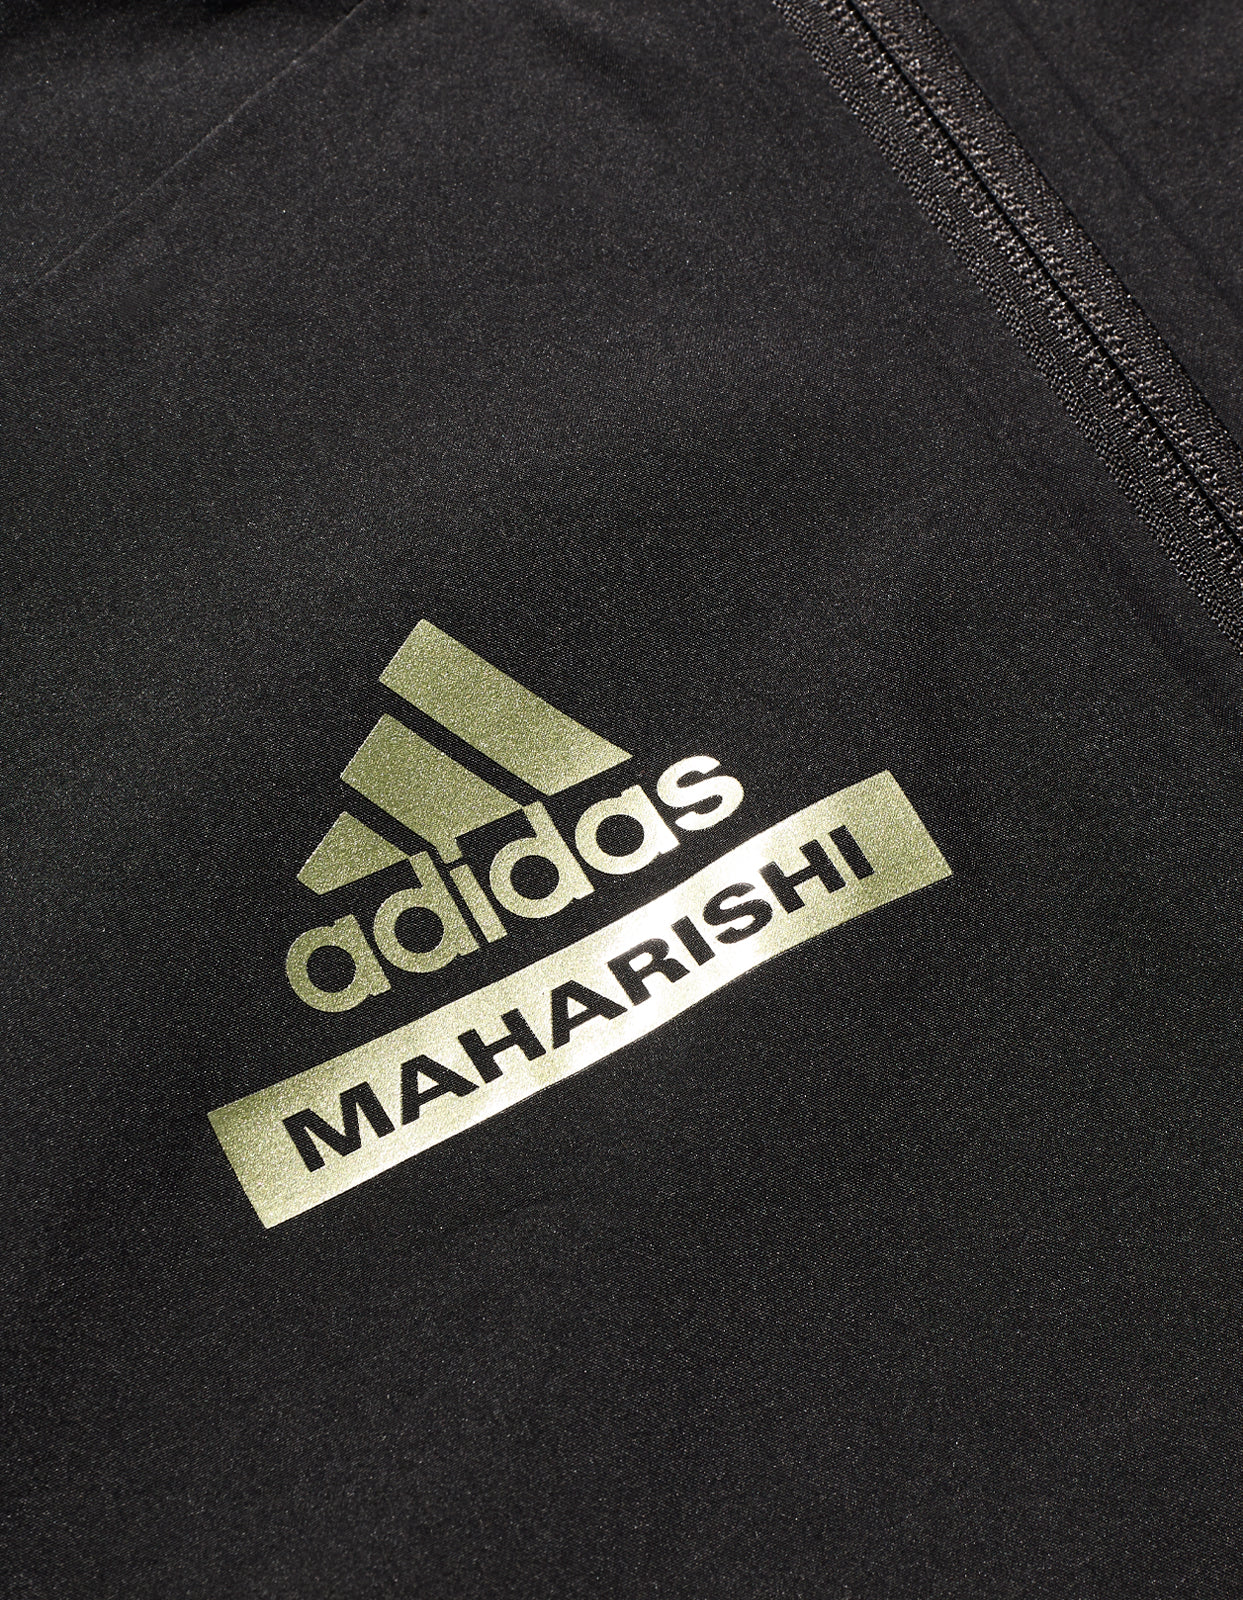 Maharishi Arsenal FC Myshelter Gore-Tex Jacket